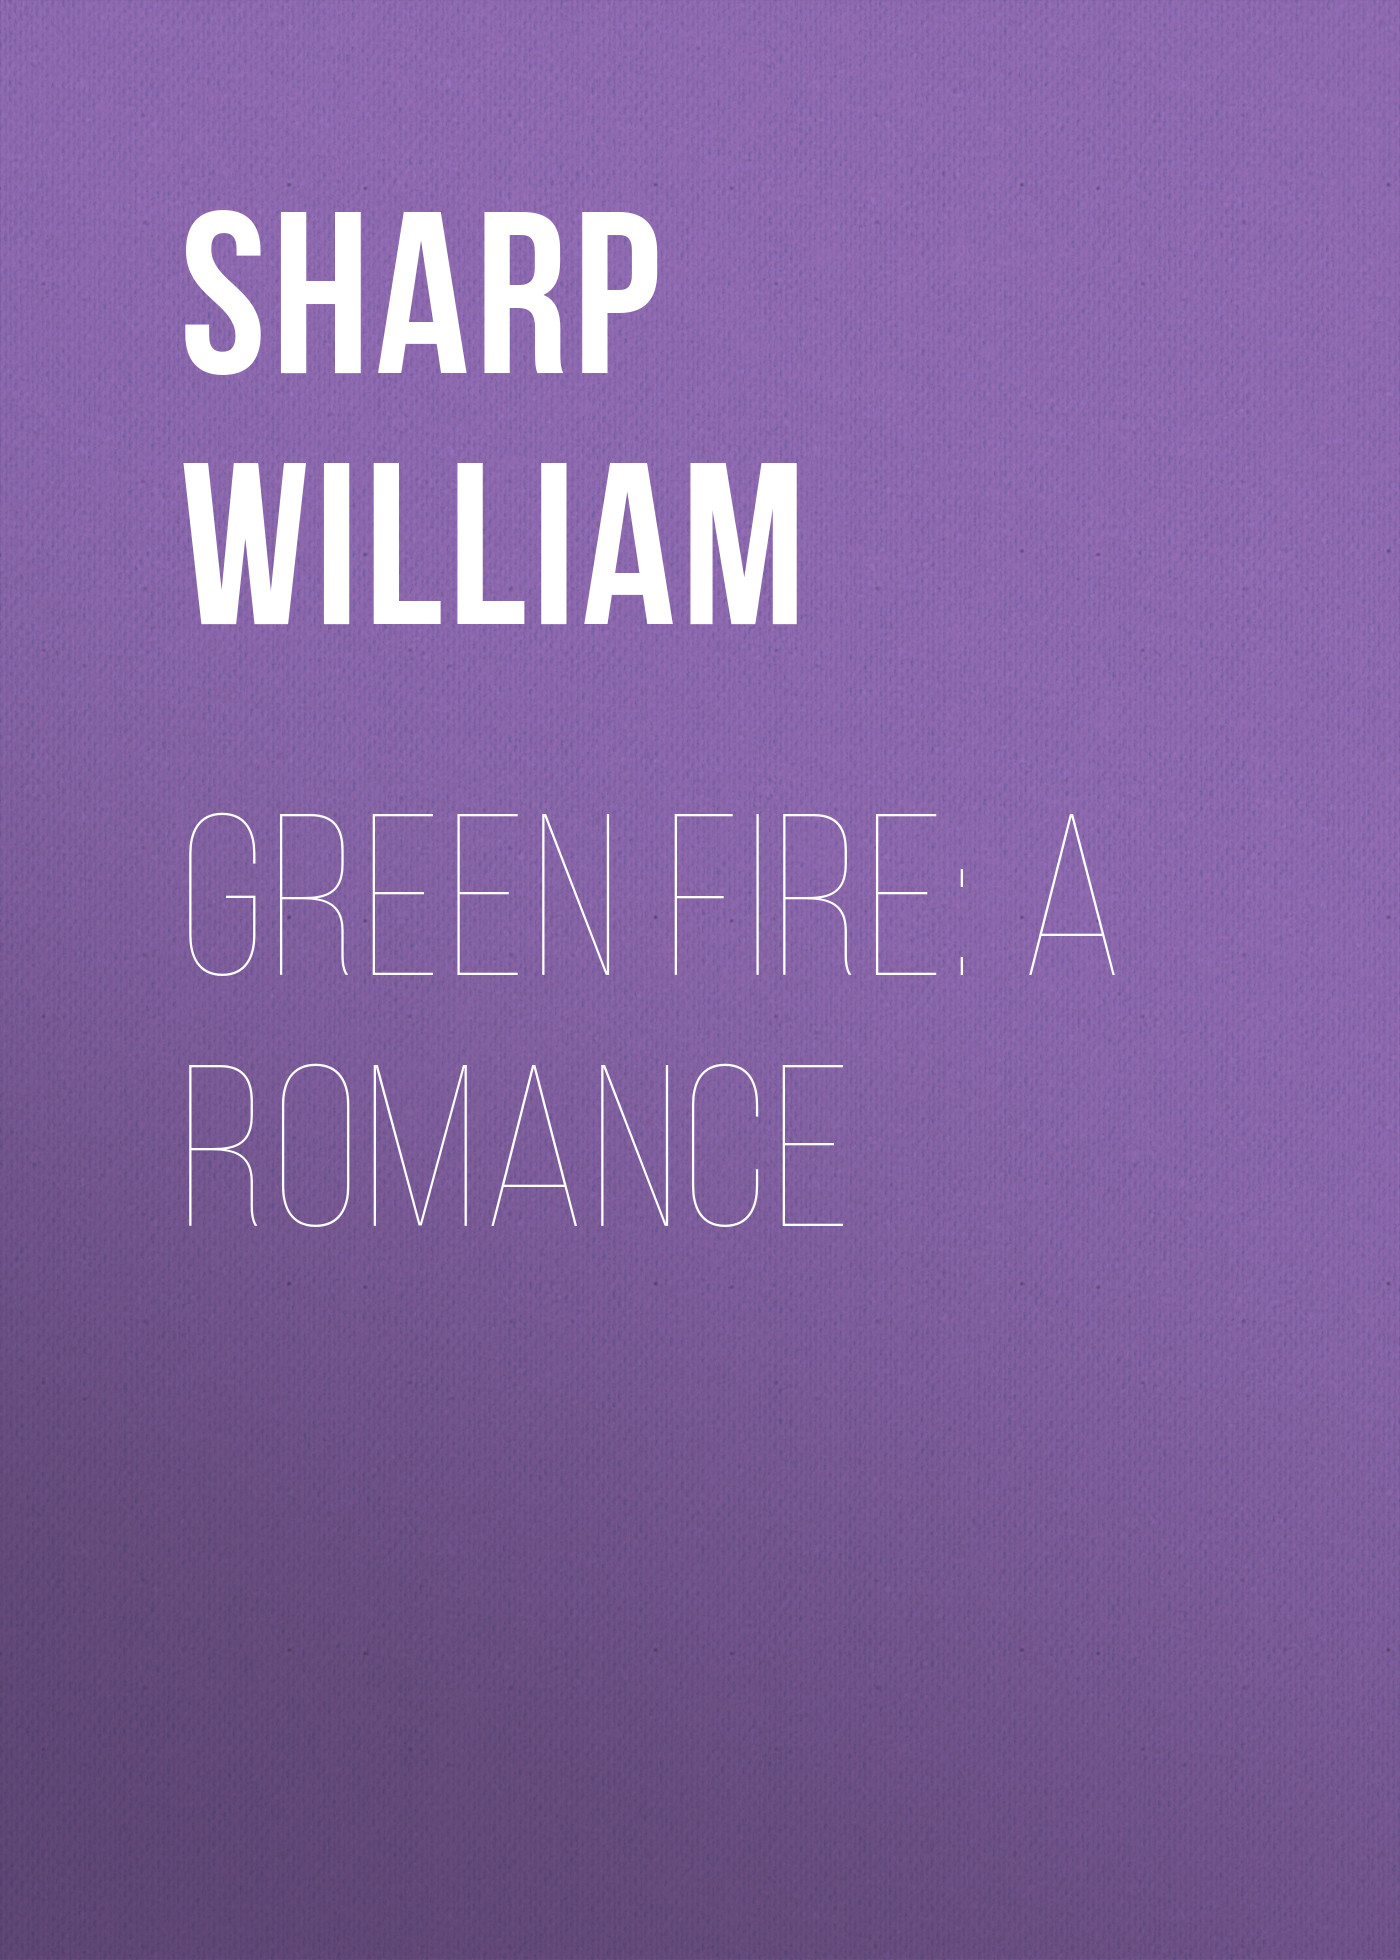 Книга Green Fire: A Romance из серии , созданная William Sharp, может относится к жанру Зарубежная старинная литература, Зарубежная классика. Стоимость электронной книги Green Fire: A Romance с идентификатором 25570183 составляет 0 руб.